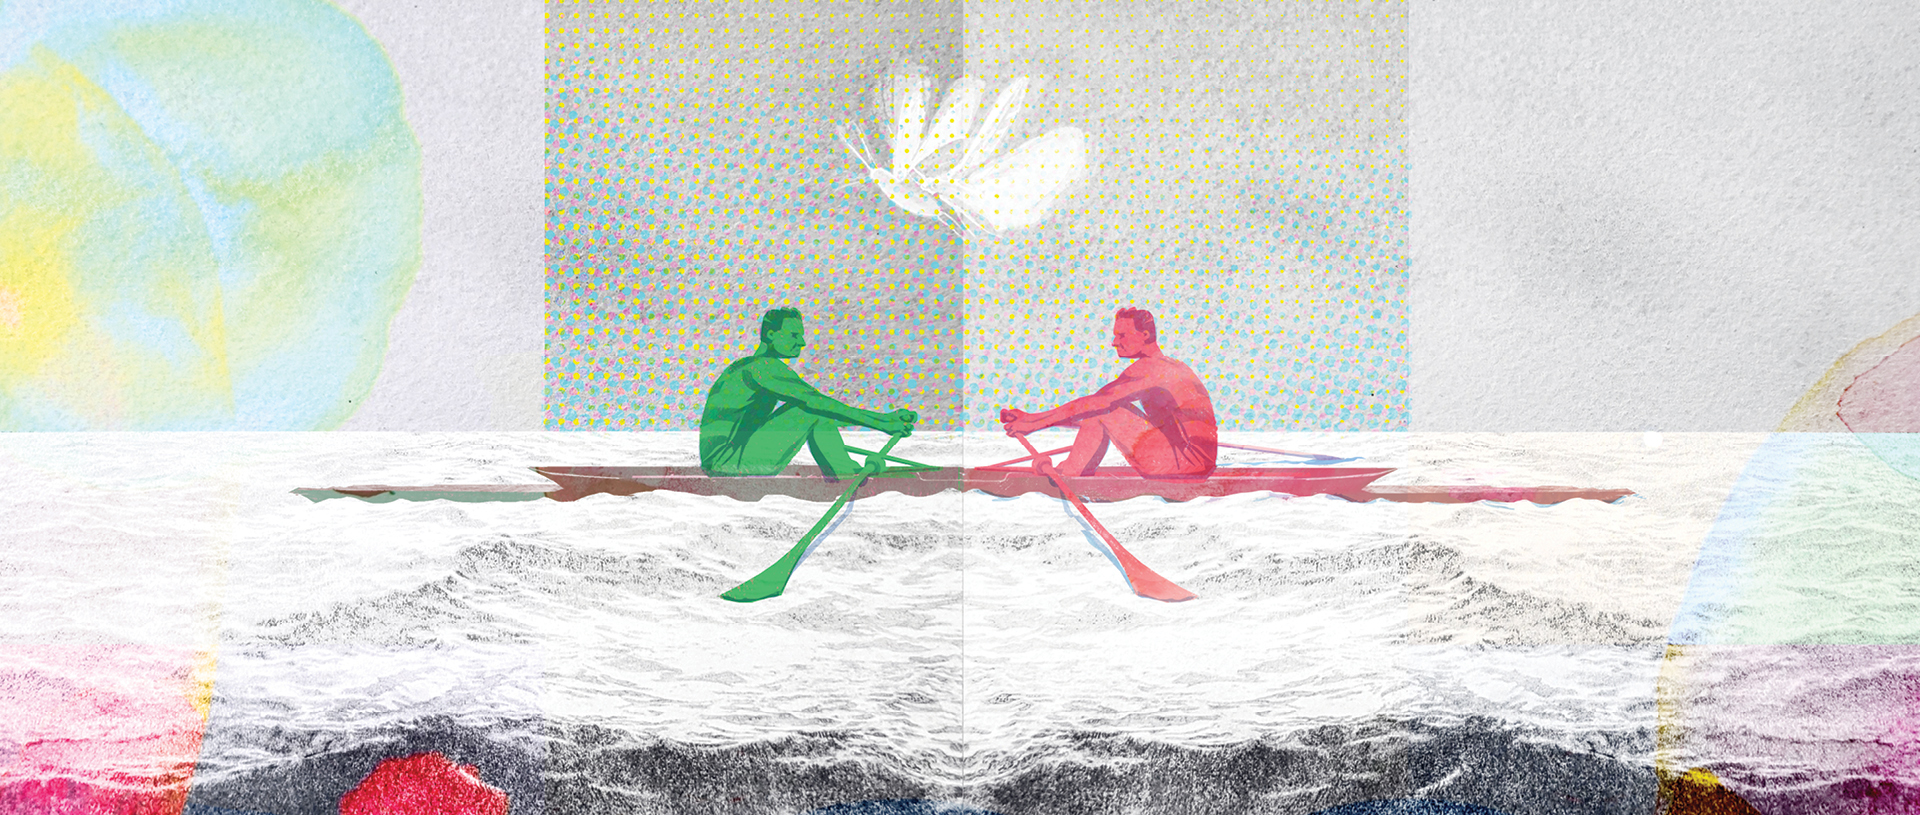 rowing illustration